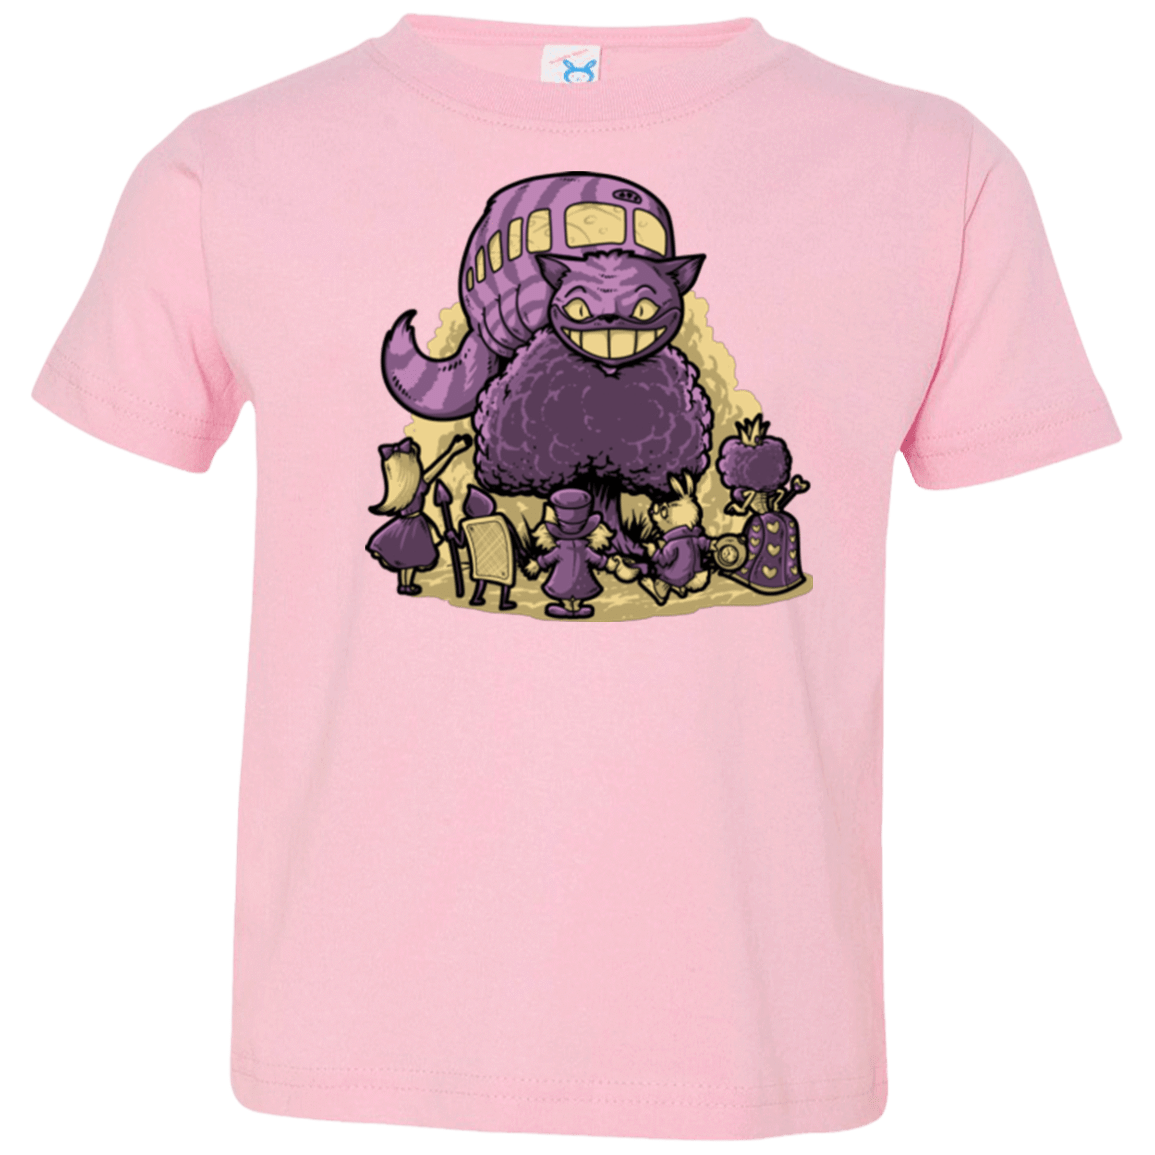 T-Shirts Pink / 2T TRAVELING WONDERLAND Toddler Premium T-Shirt